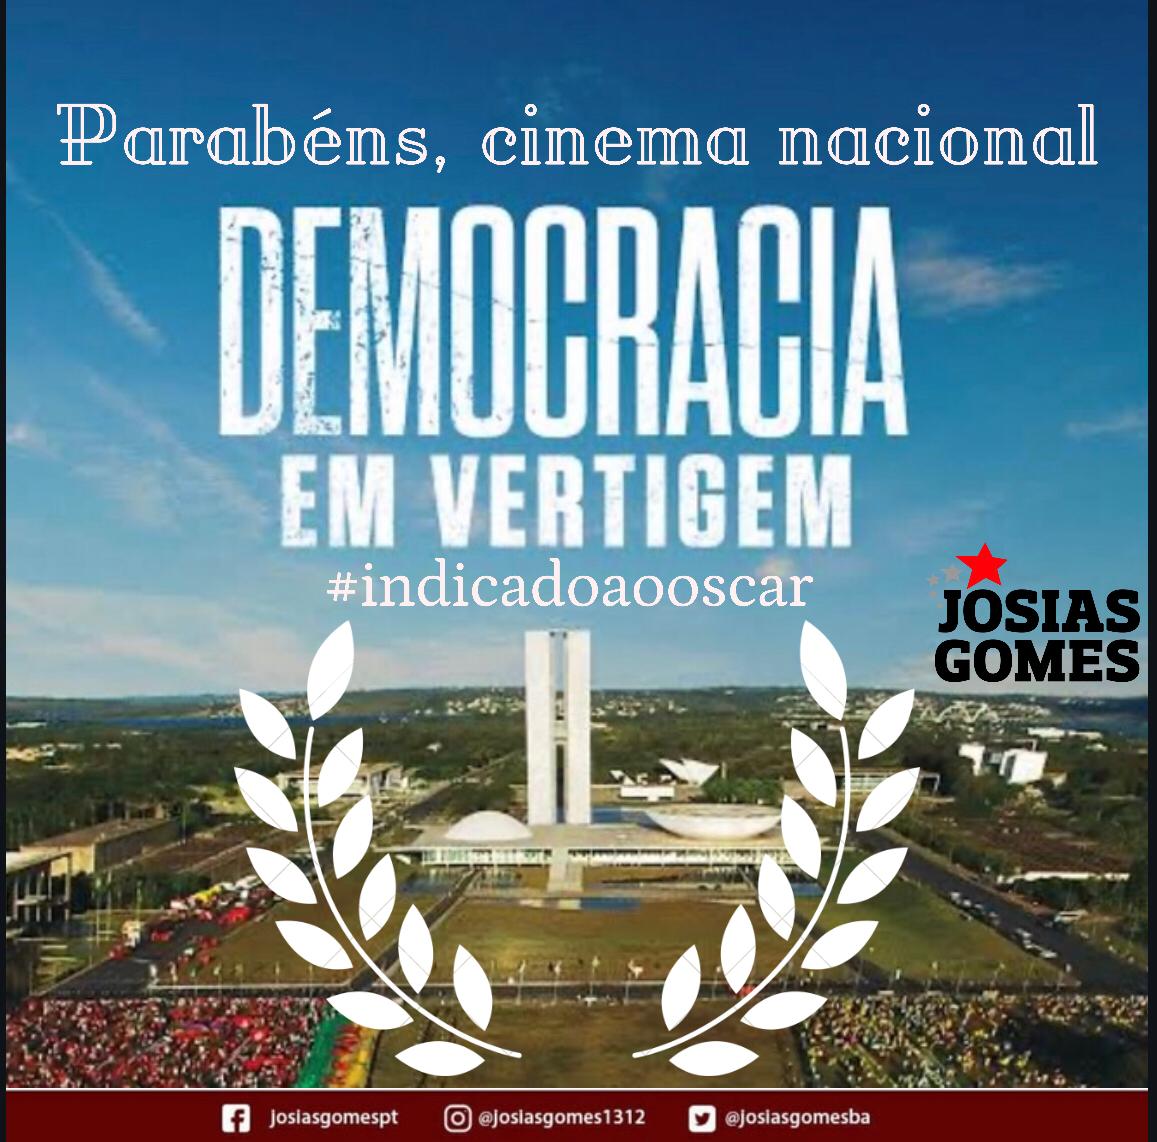 Grande Conquista Do Cinema Nacional!